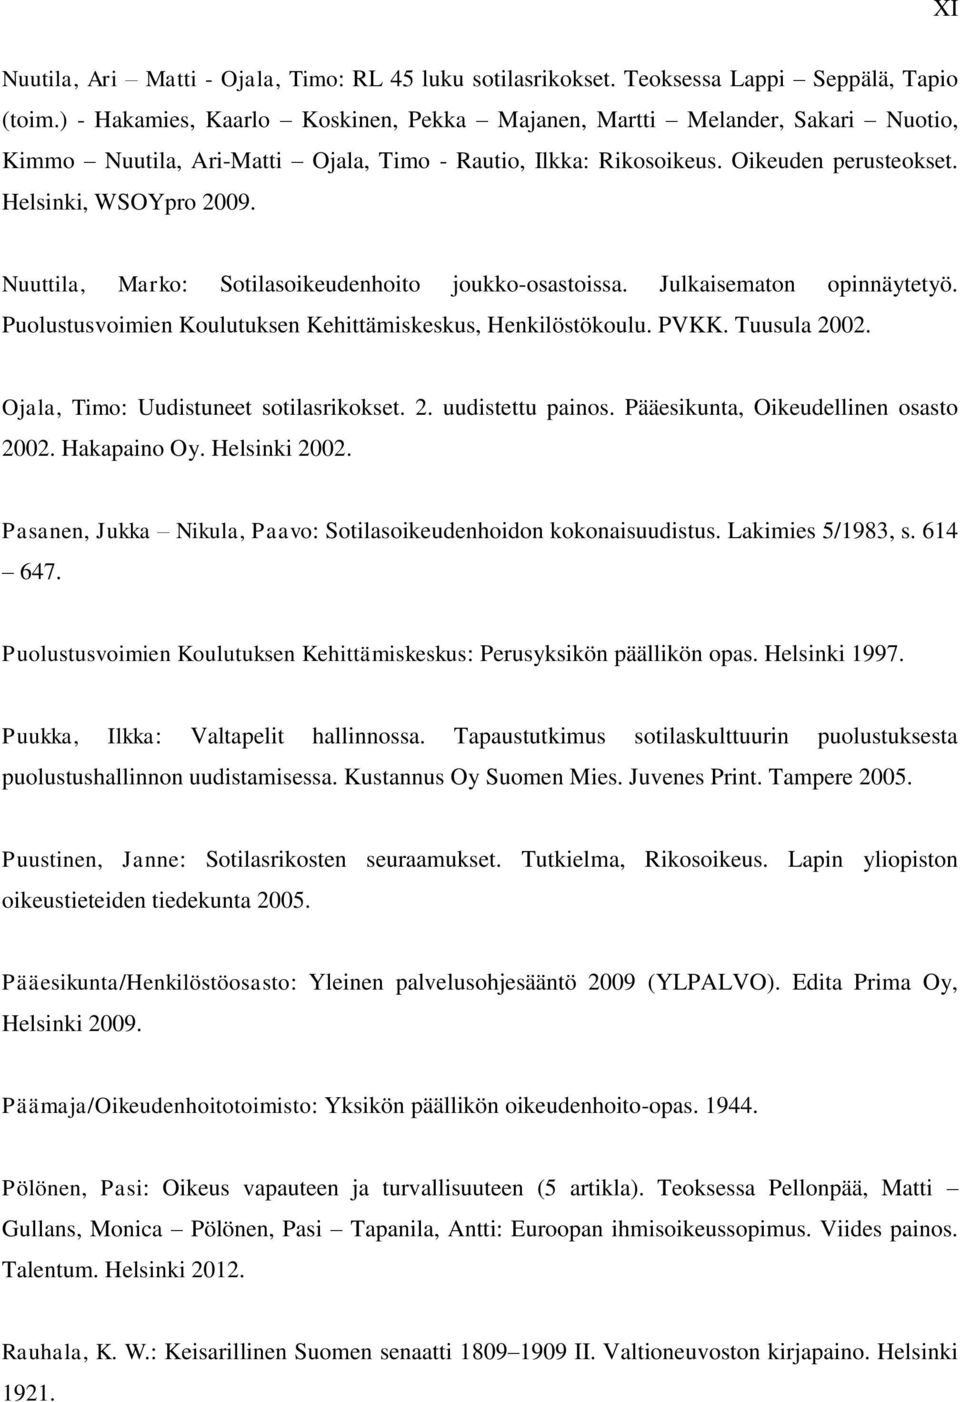 Nuuttila, Marko: Sotilasoikeudenhoito joukko-osastoissa. Julkaisematon opinnäytetyö. Puolustusvoimien Koulutuksen Kehittämiskeskus, Henkilöstökoulu. PVKK. Tuusula 2002.